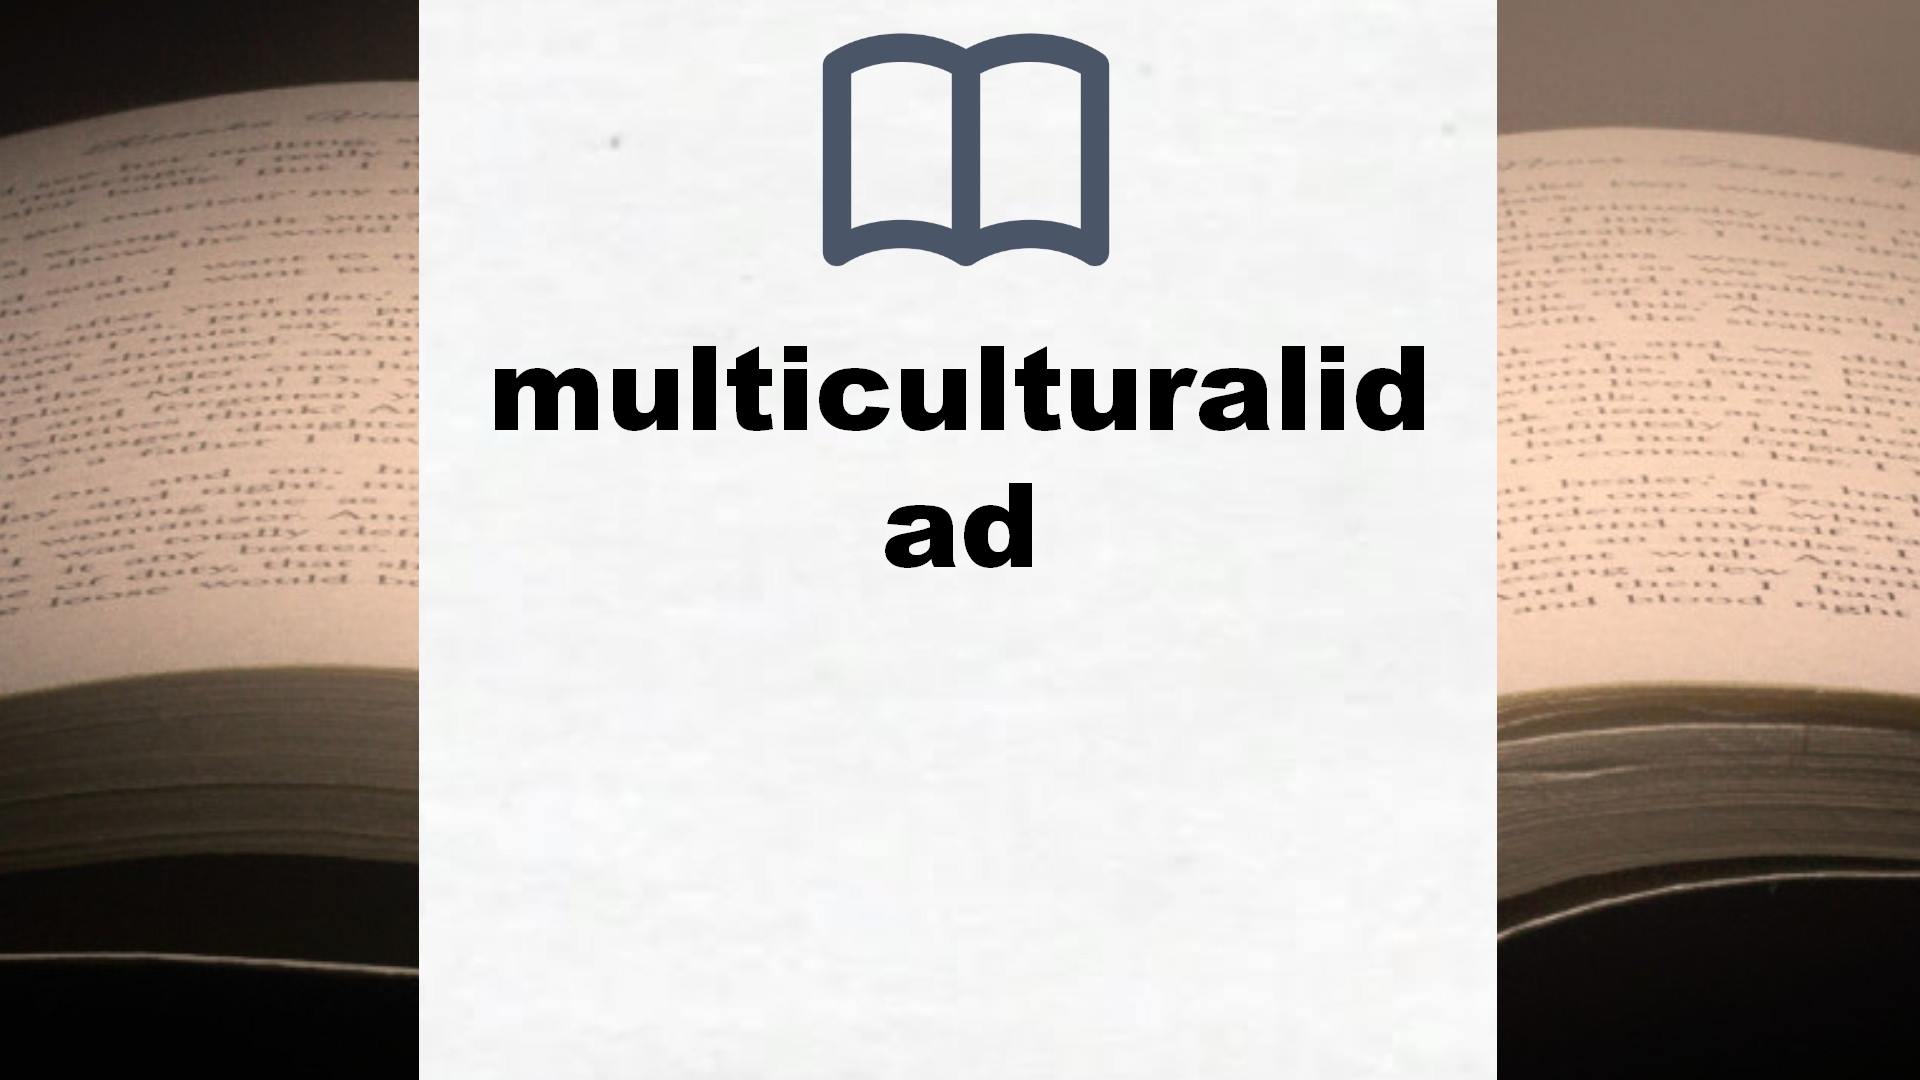 Libros sobre multiculturalidad